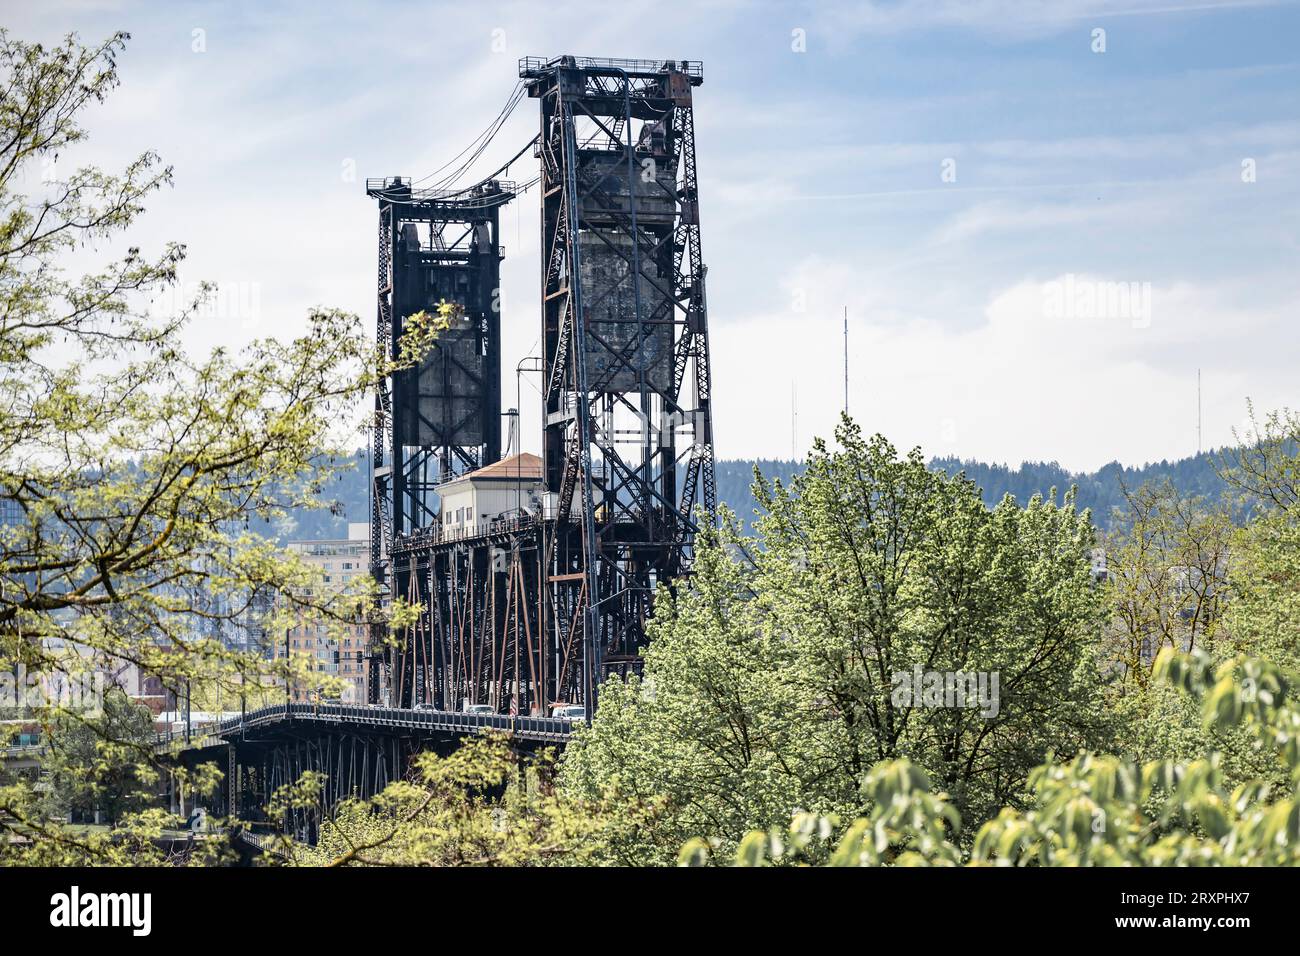 Transporte de puente levadizo y puente peatonal Hawthorn sobre el río Willamette en Portland con cerchas metálicas entrelazadas y soportes de hormigón y un Foto de stock